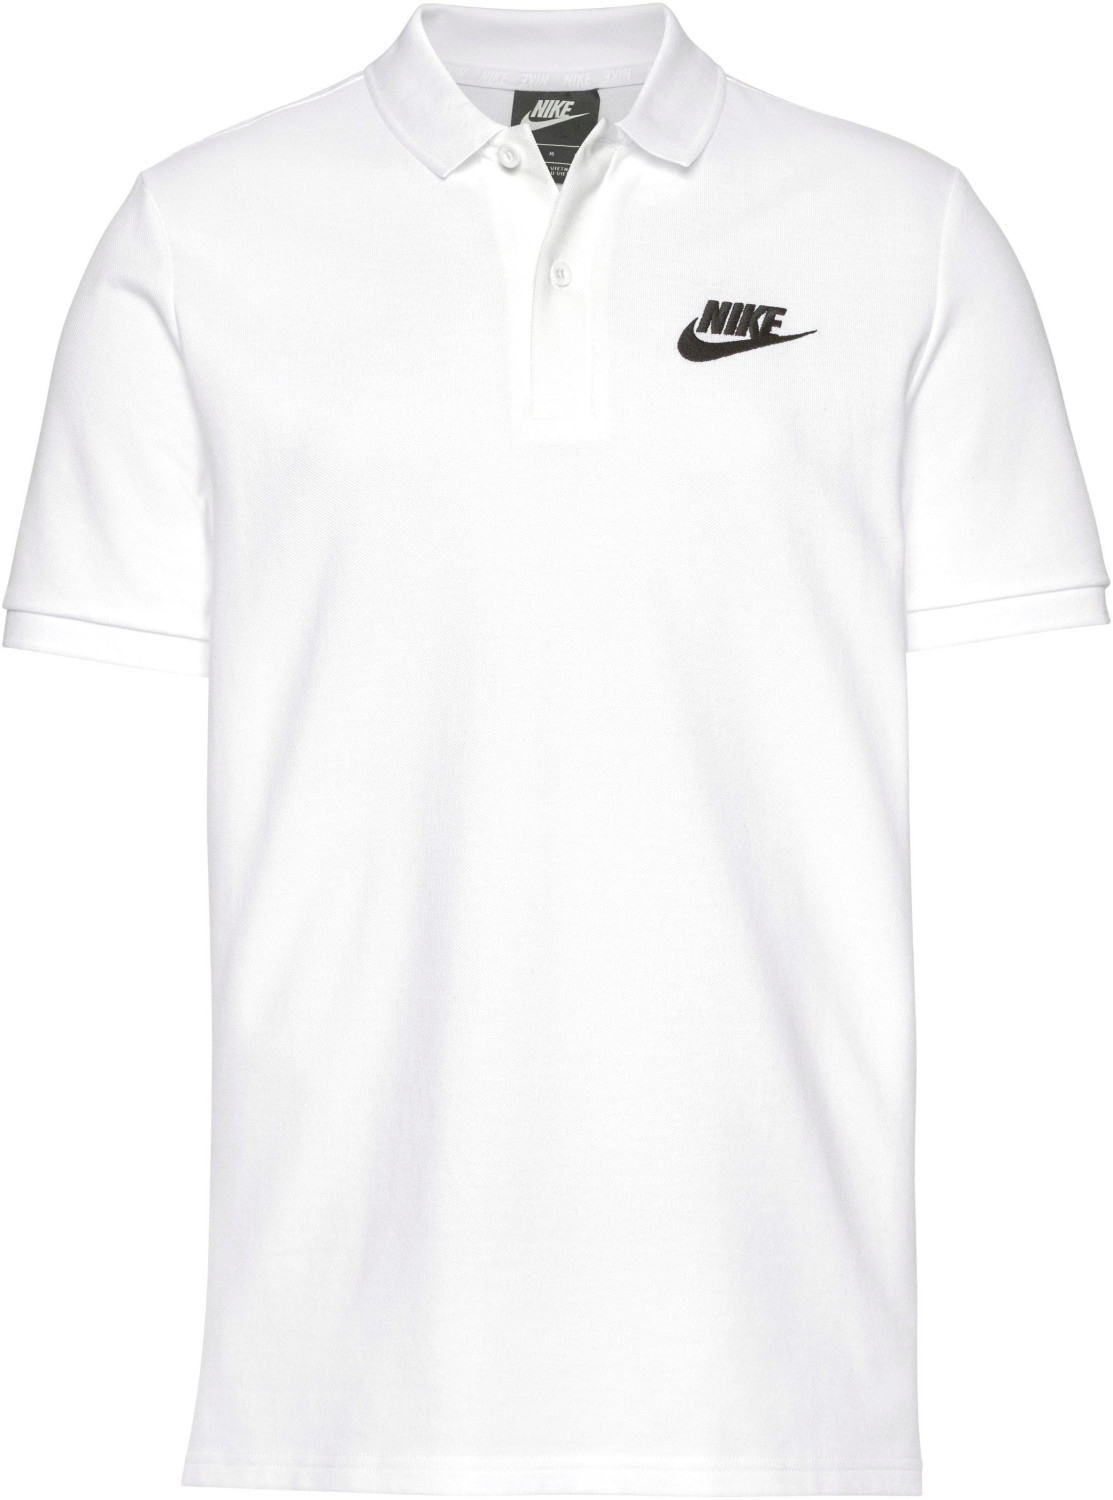 Nike Sportswear Polo white/black